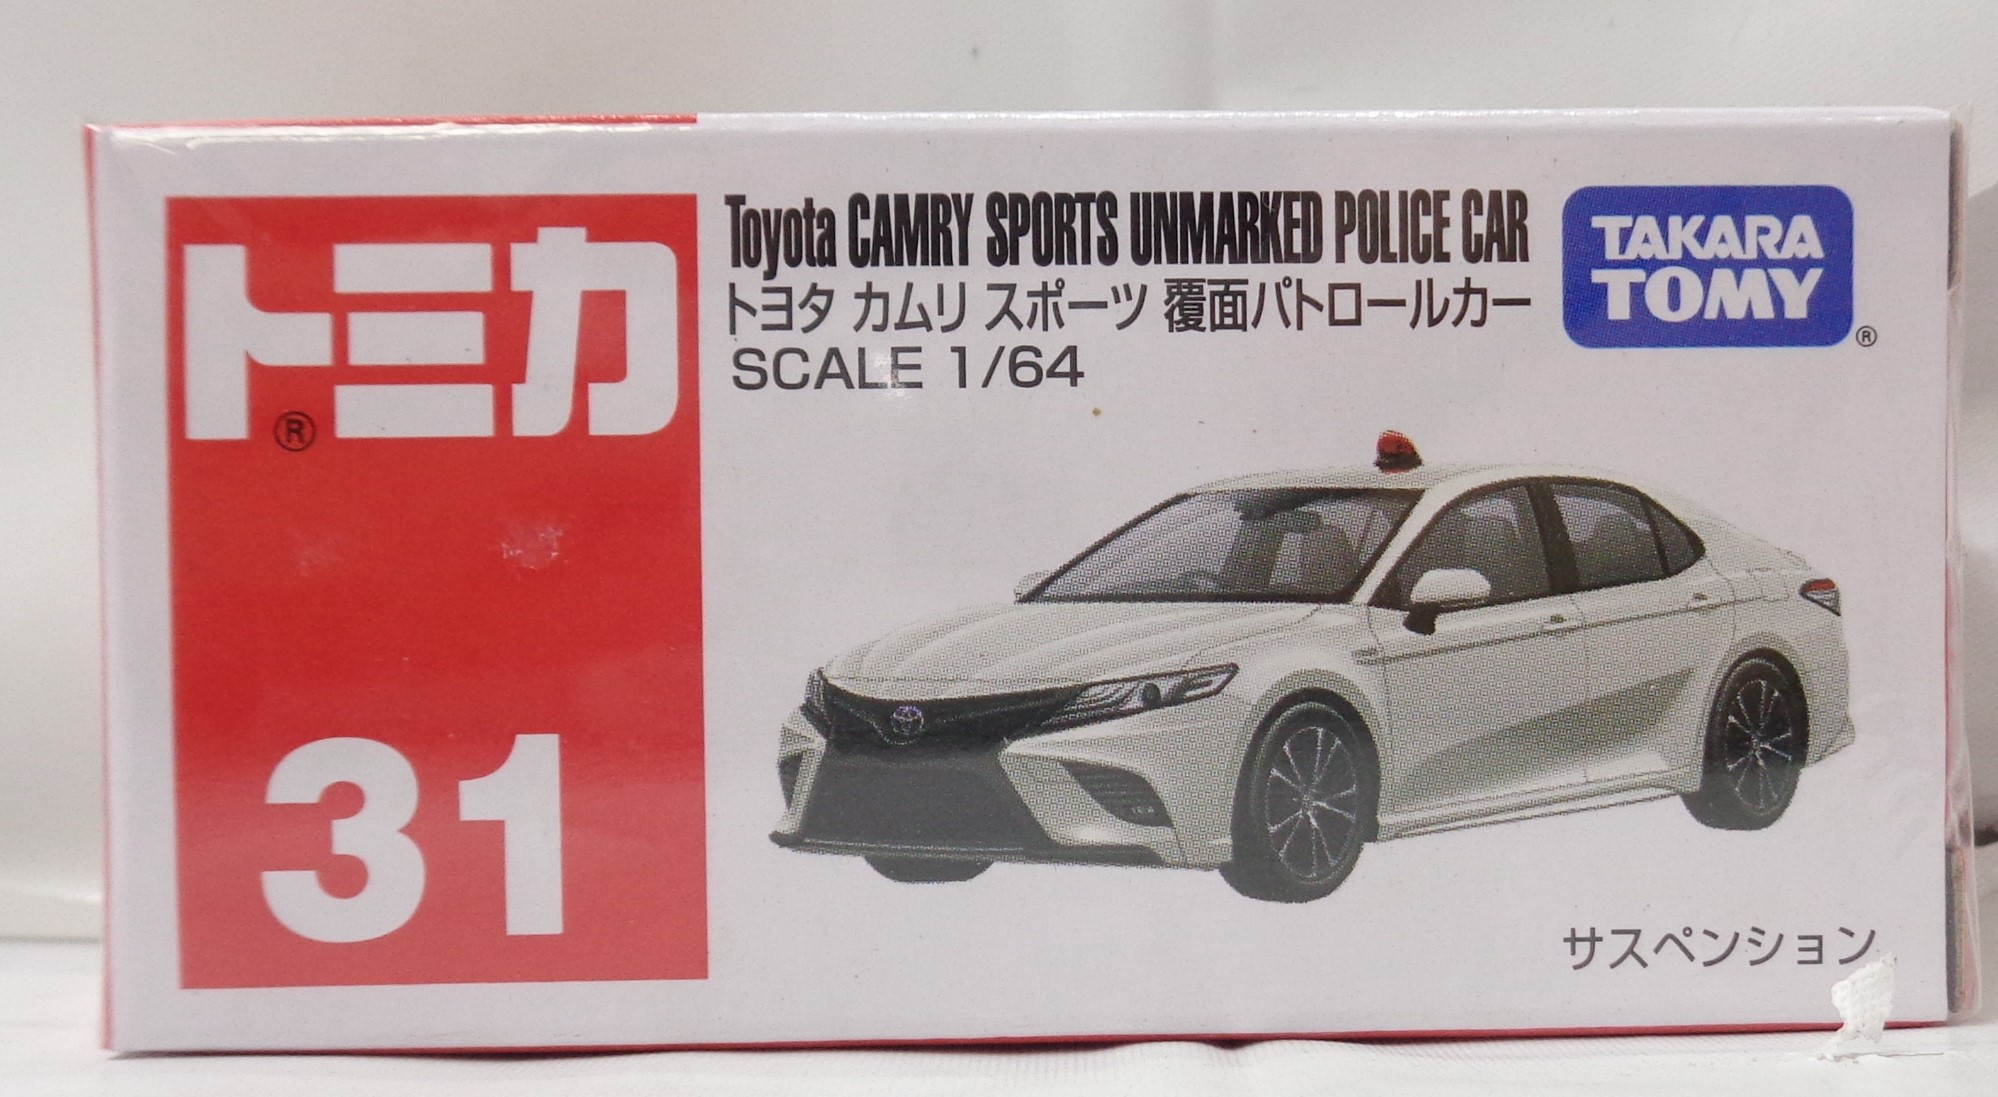 タカラトミー トミカ 赤箱 31 トヨタ カムリ スポーツ 覆面パトロールカー